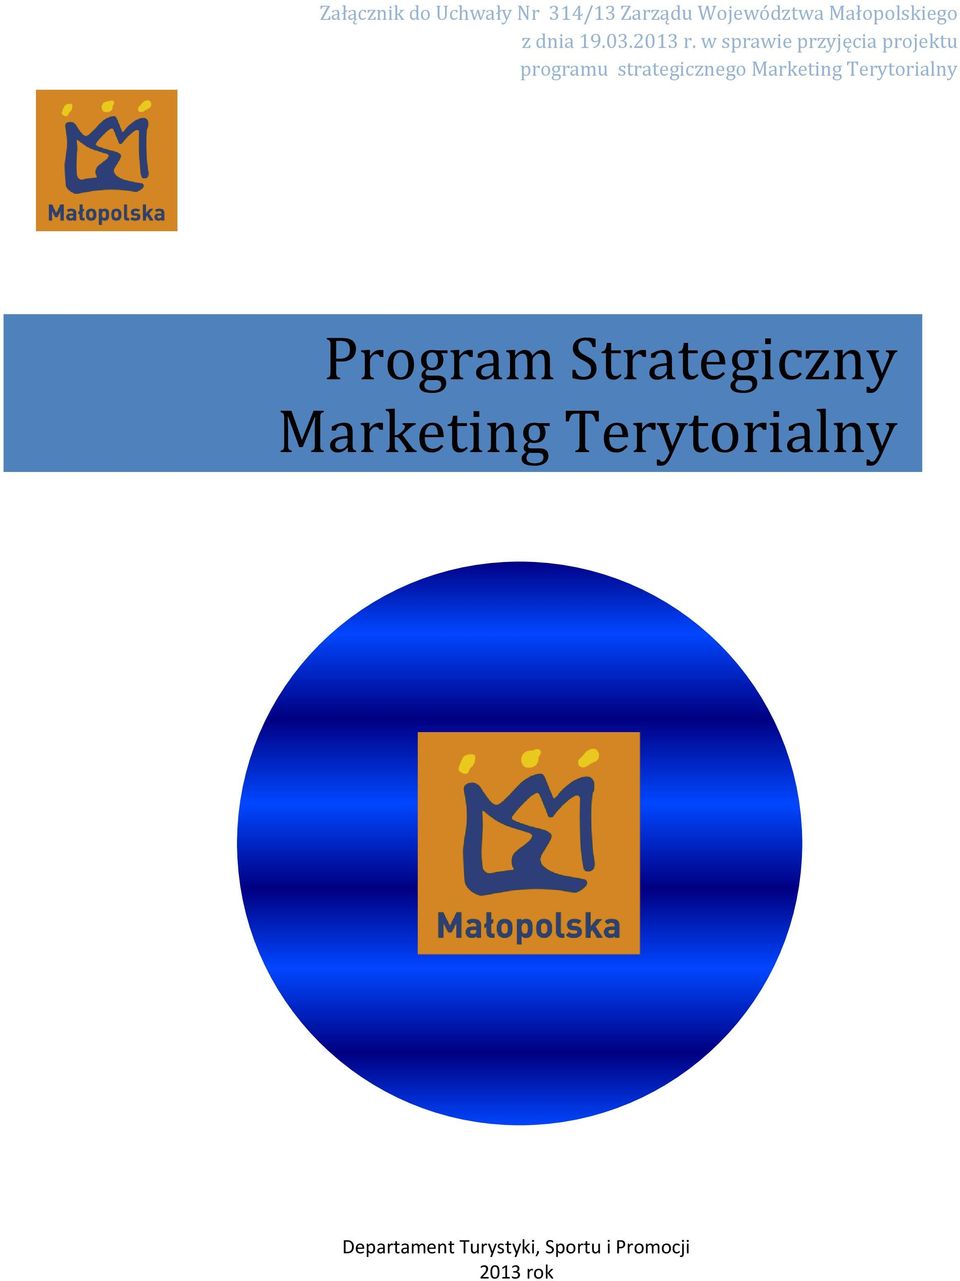 w sprawie przyjęcia projektu programu strategicznego Marketing